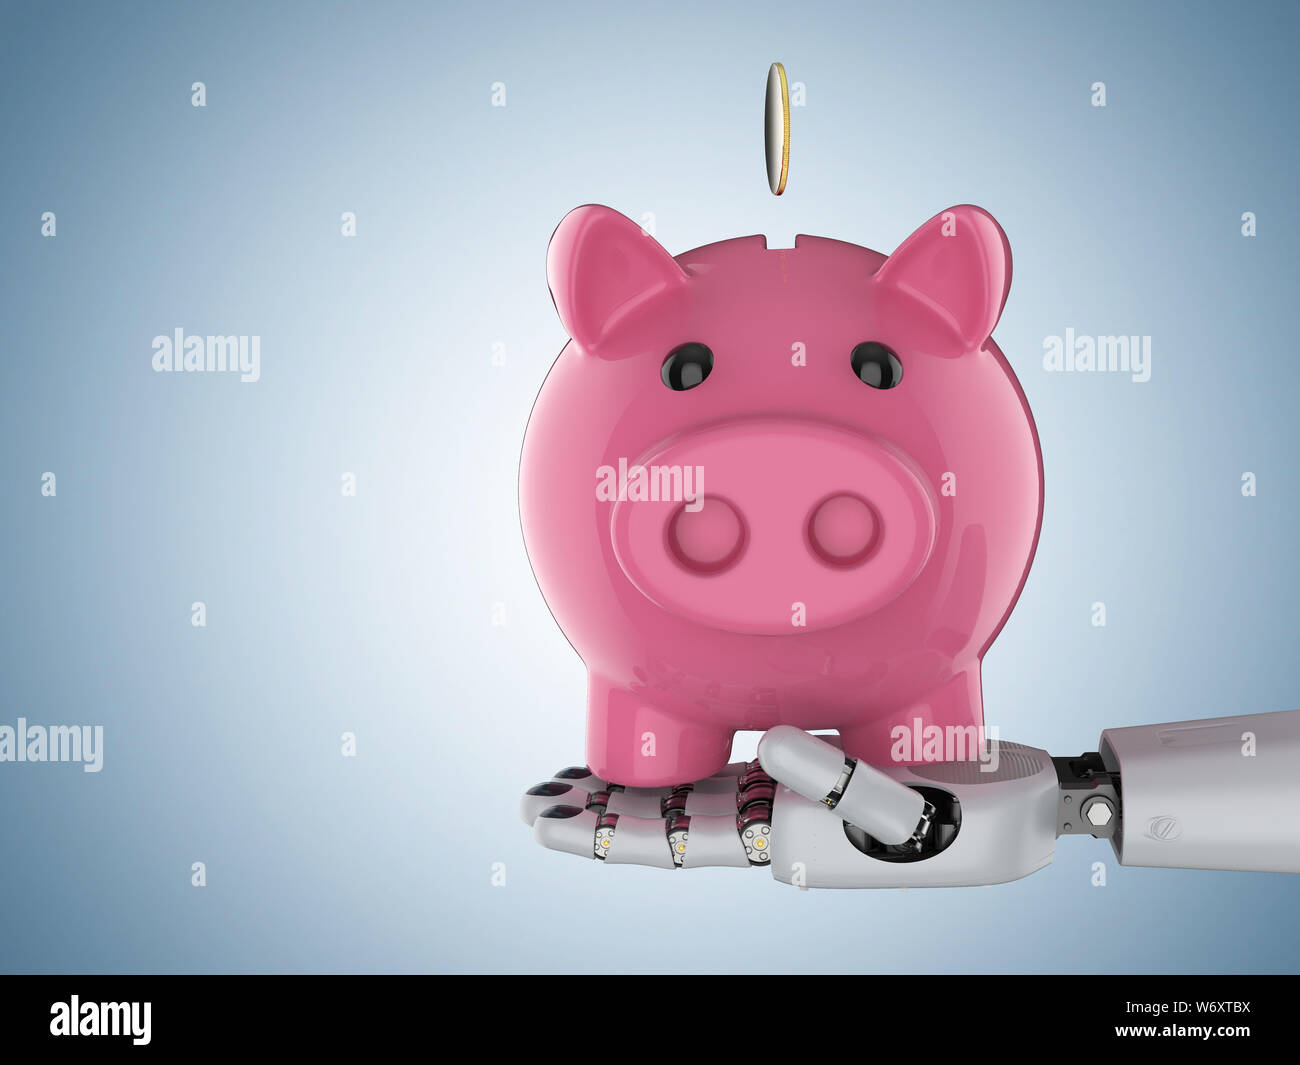 Technologie concept financier avec rendu 3D cyborg hand holding piggy bank Banque D'Images